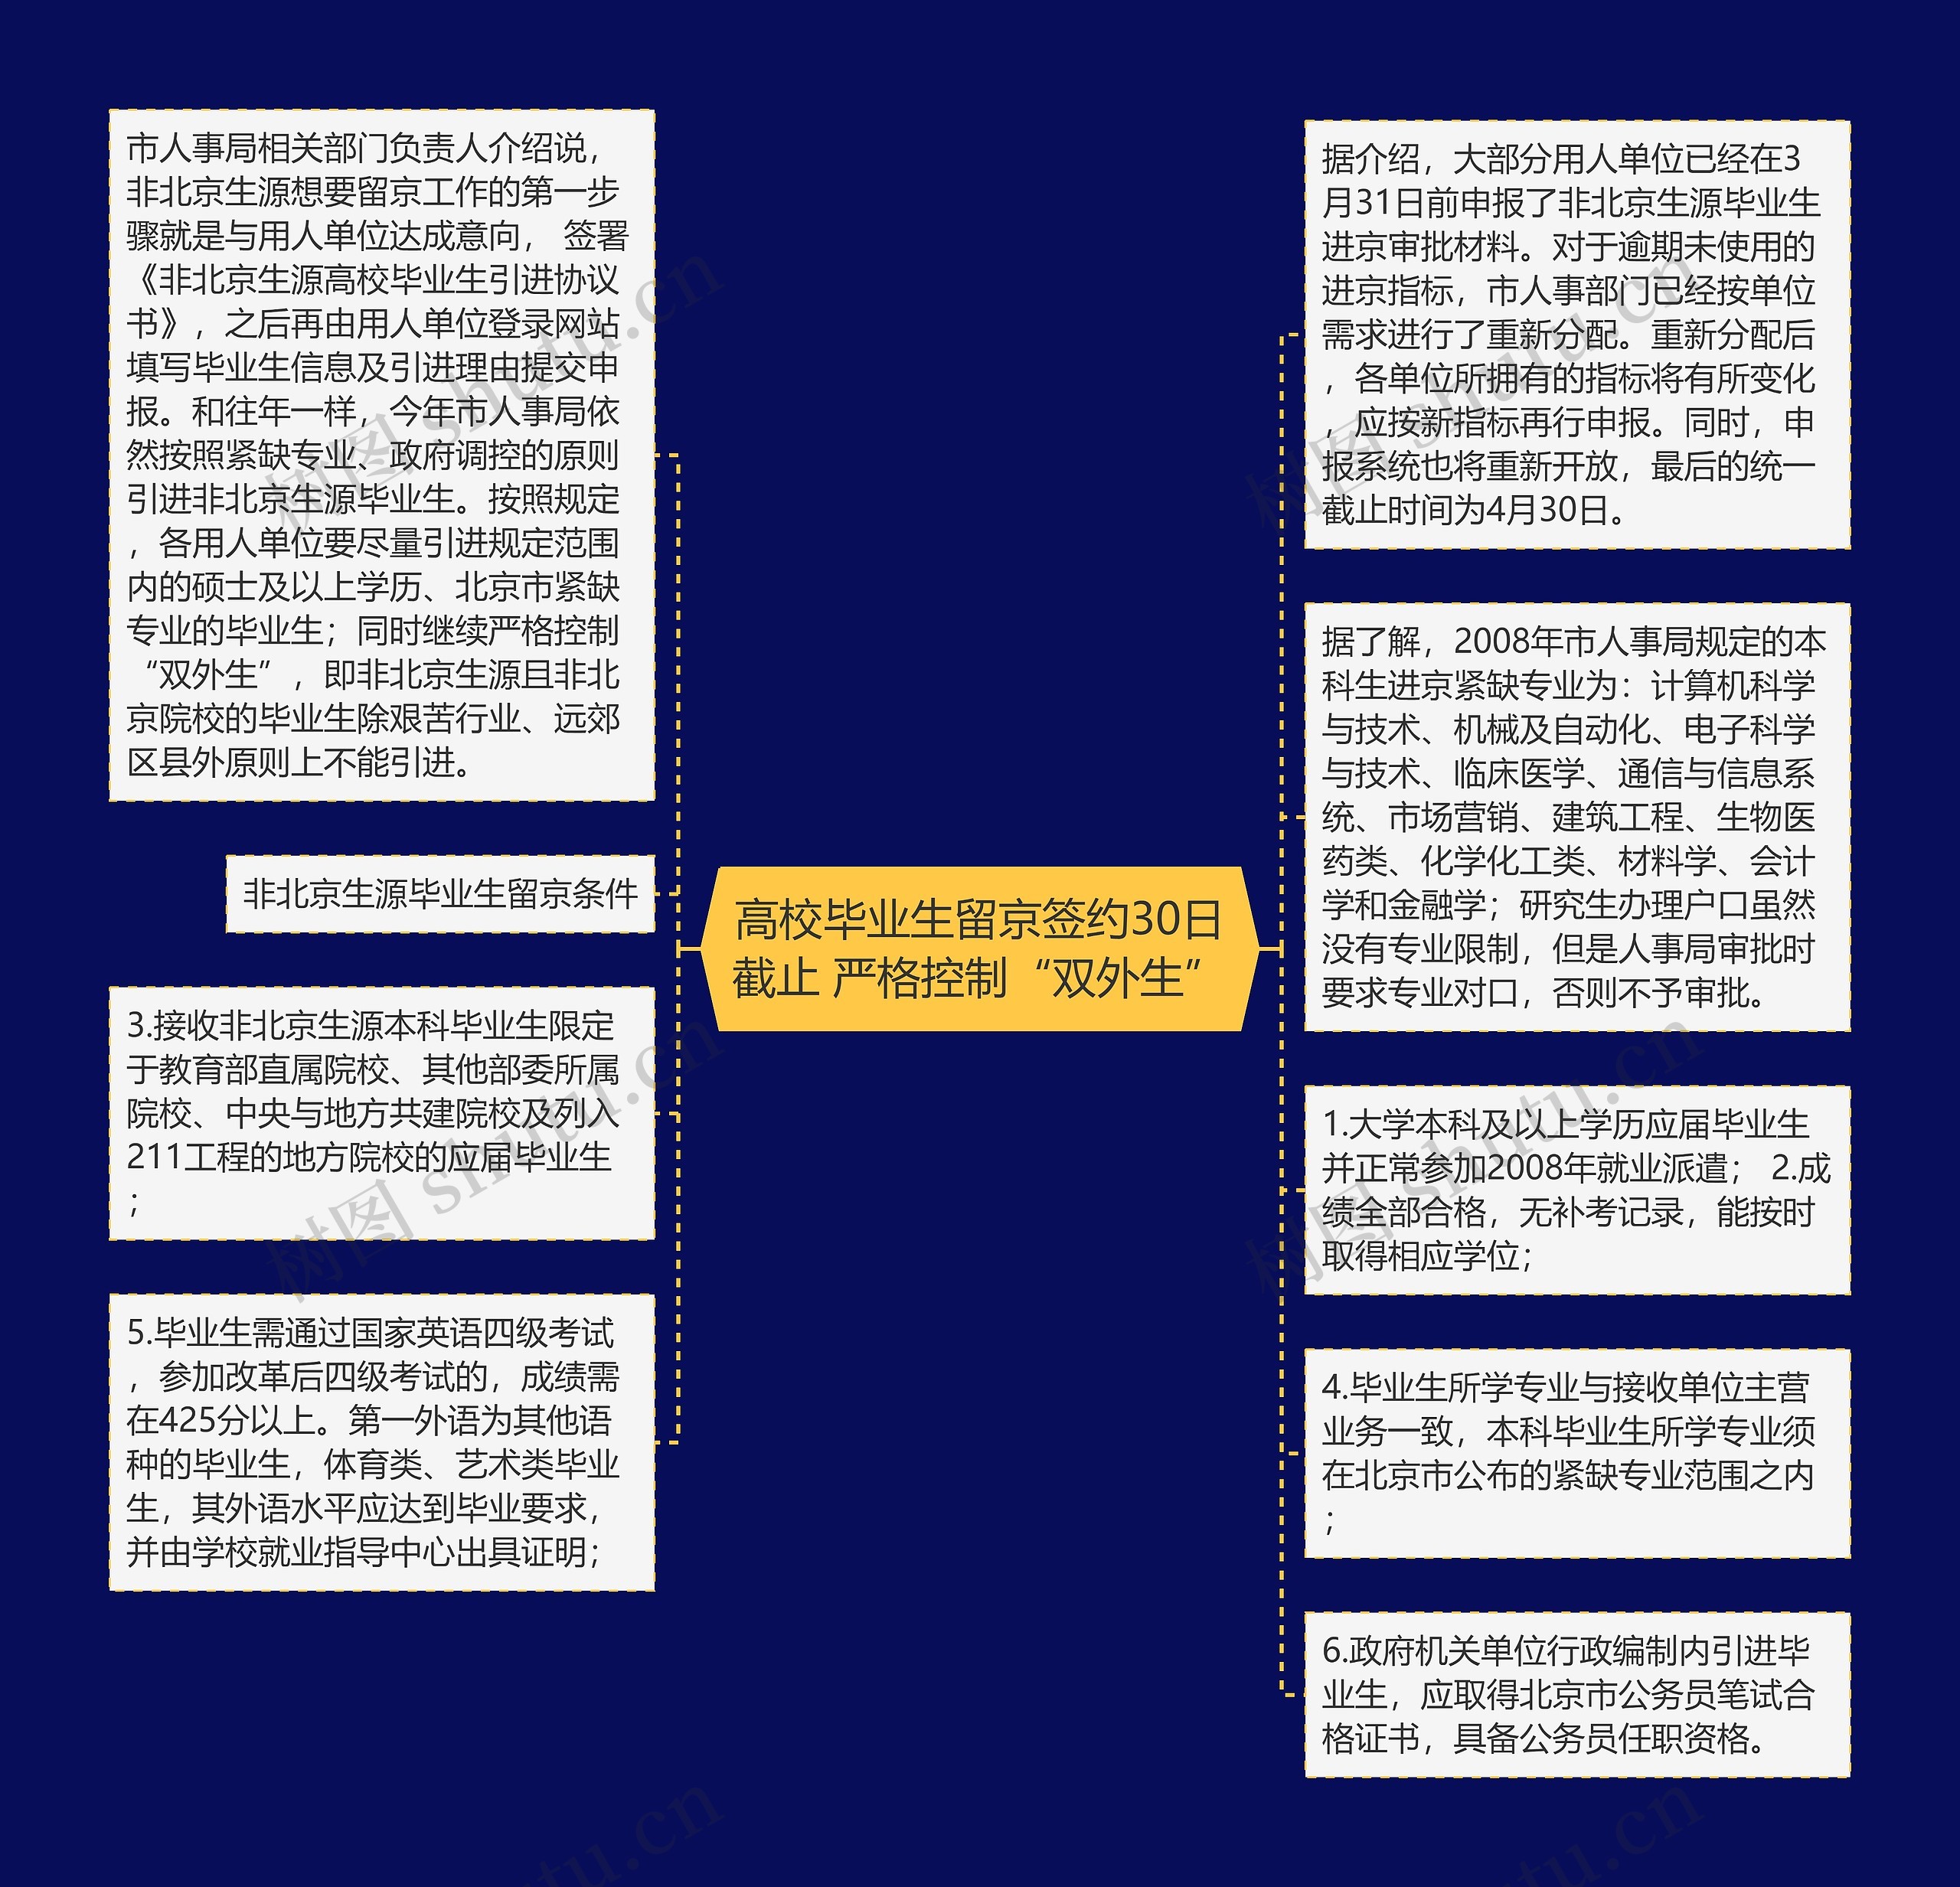 高校毕业生留京签约30日截止 严格控制“双外生”思维导图